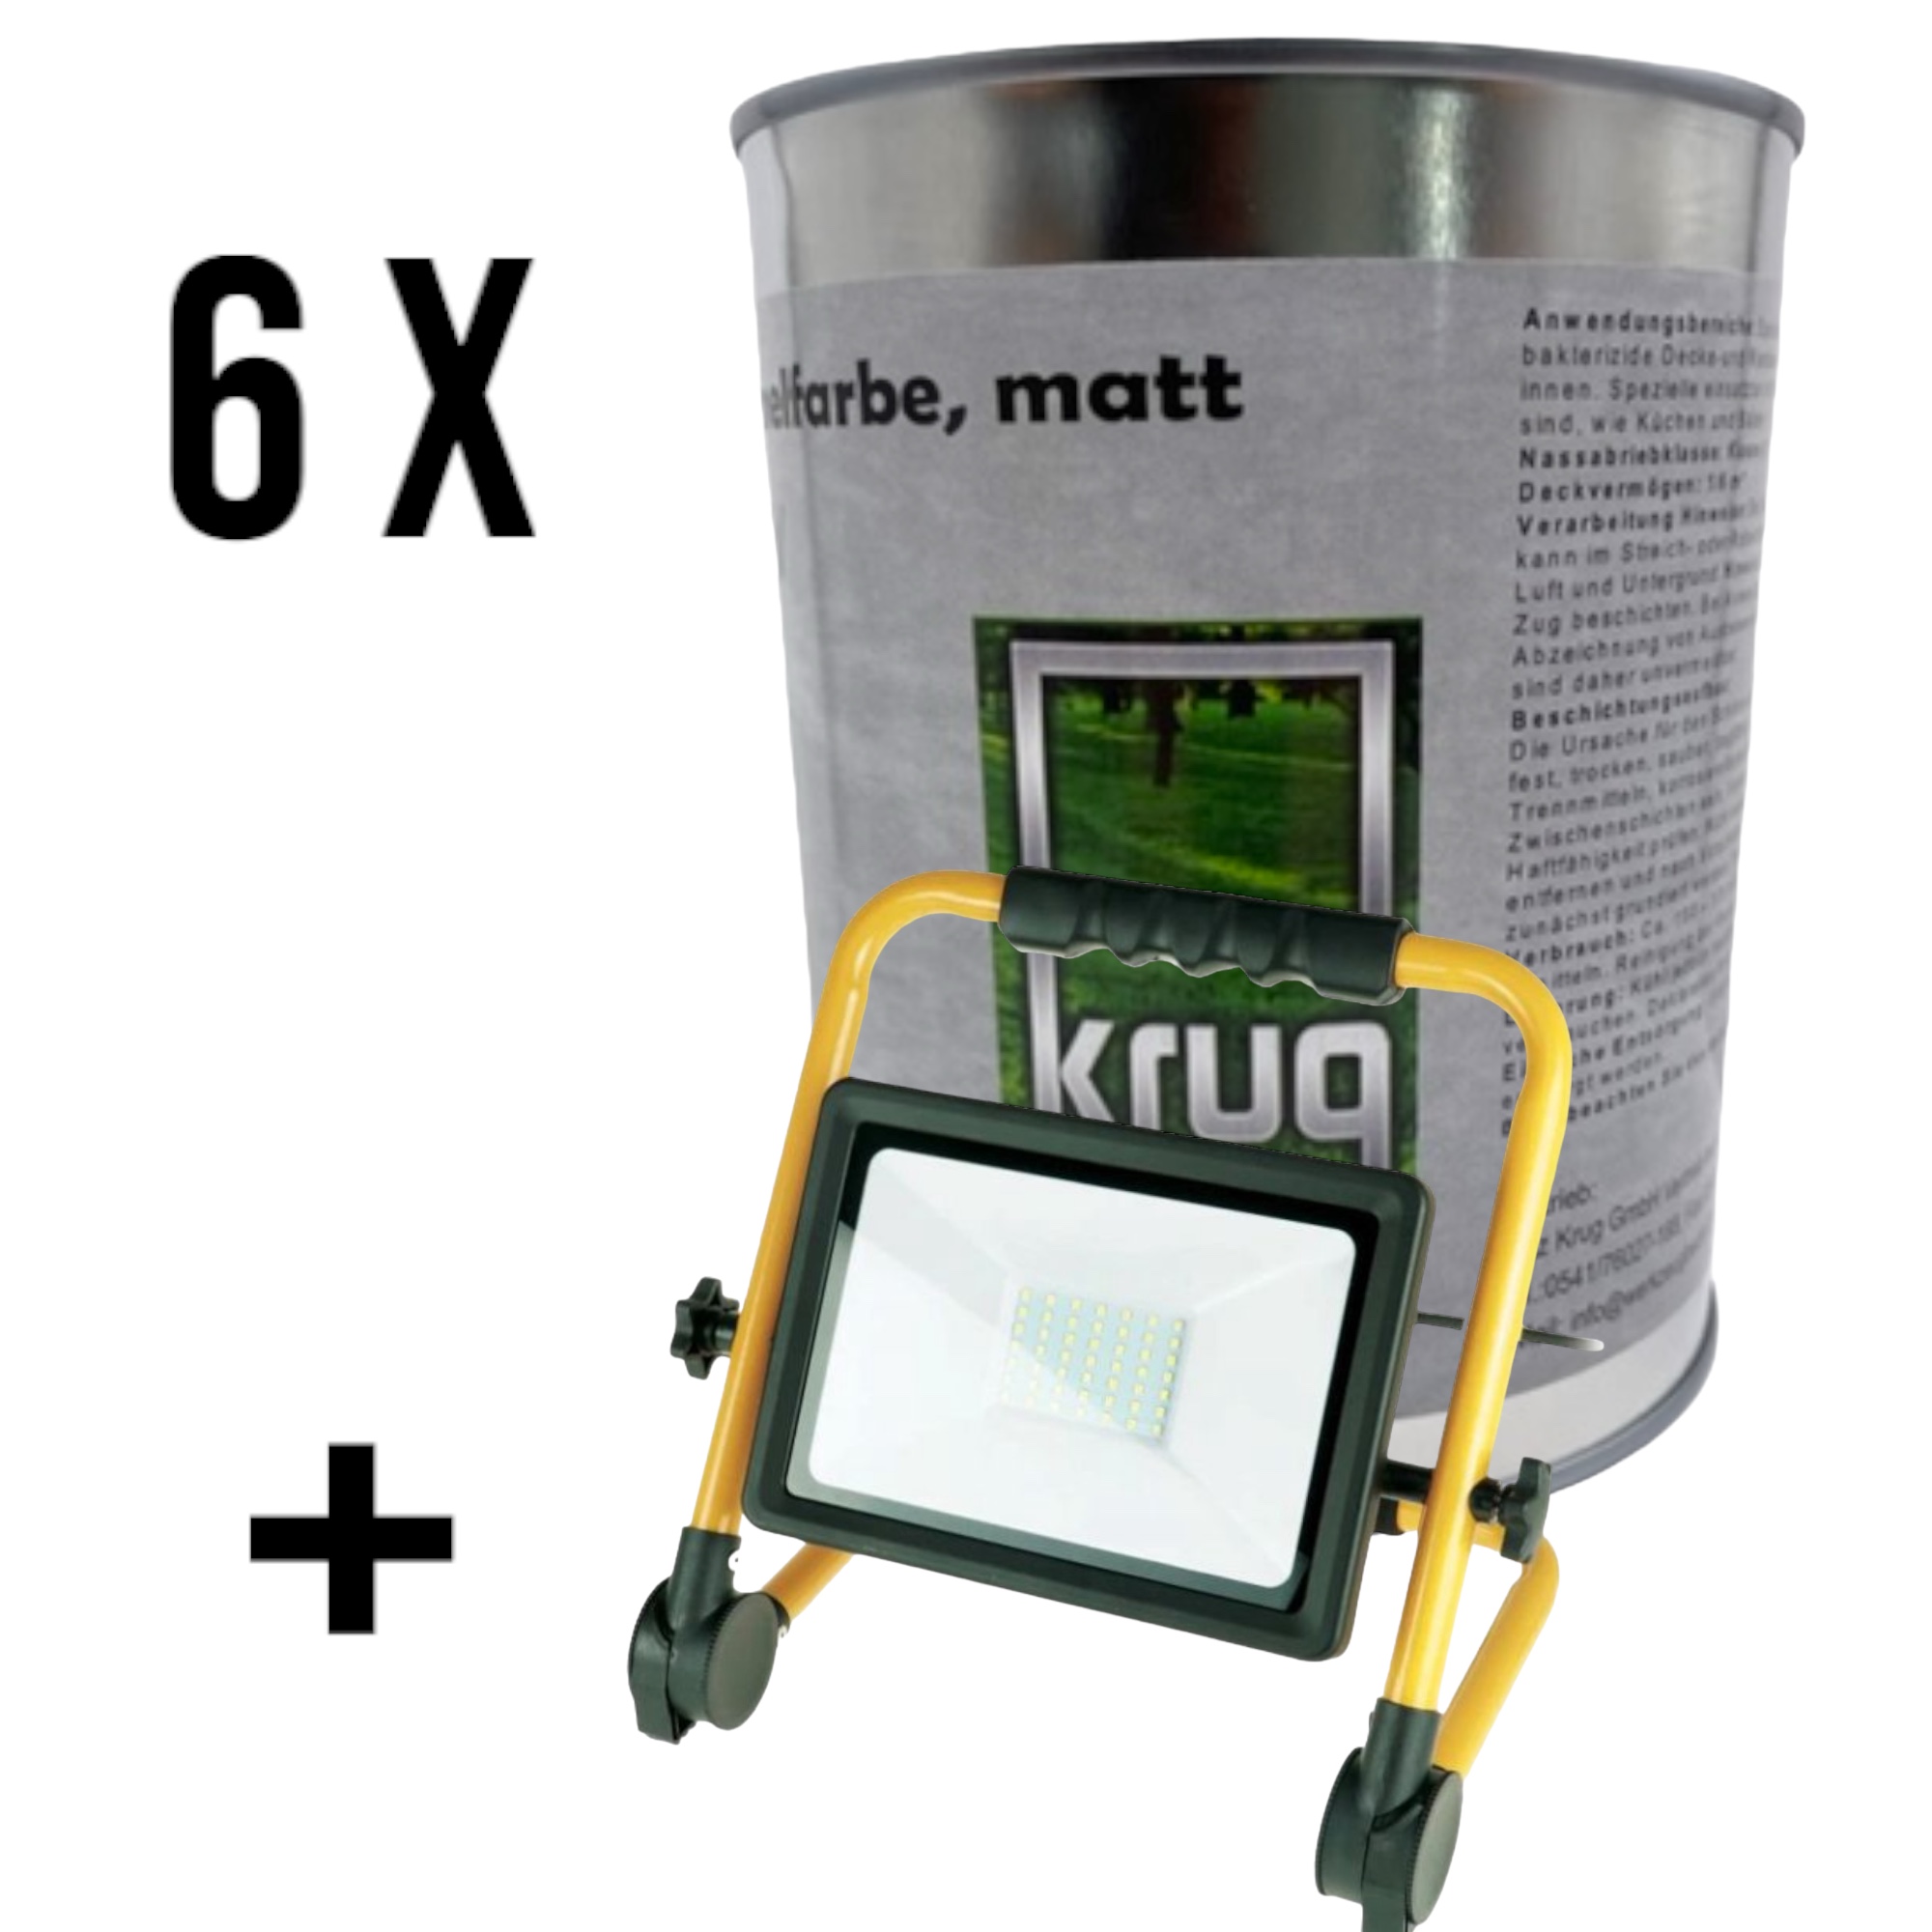 Set 6 x Krug Antischimmelfarbe Matt 0,75 Liter + 1 x SMD LED Baustrahler 50W, IP65